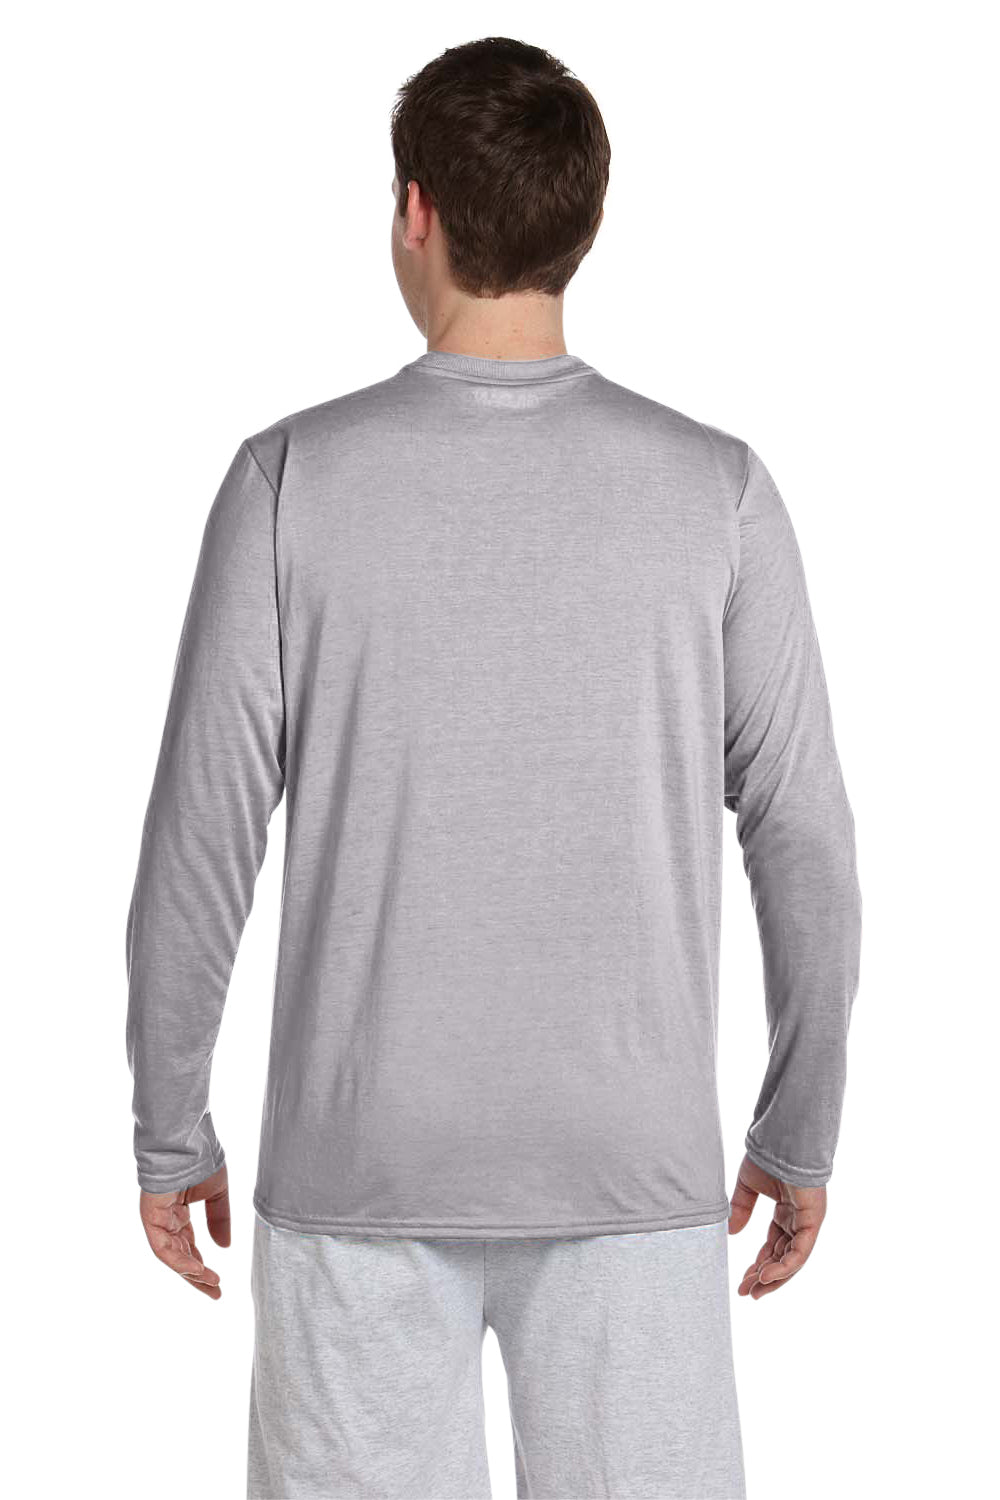 Gildan G424 Mens Performance Jersey Moisture Wicking Long Sleeve Crewneck T-Shirt Sport Grey Back